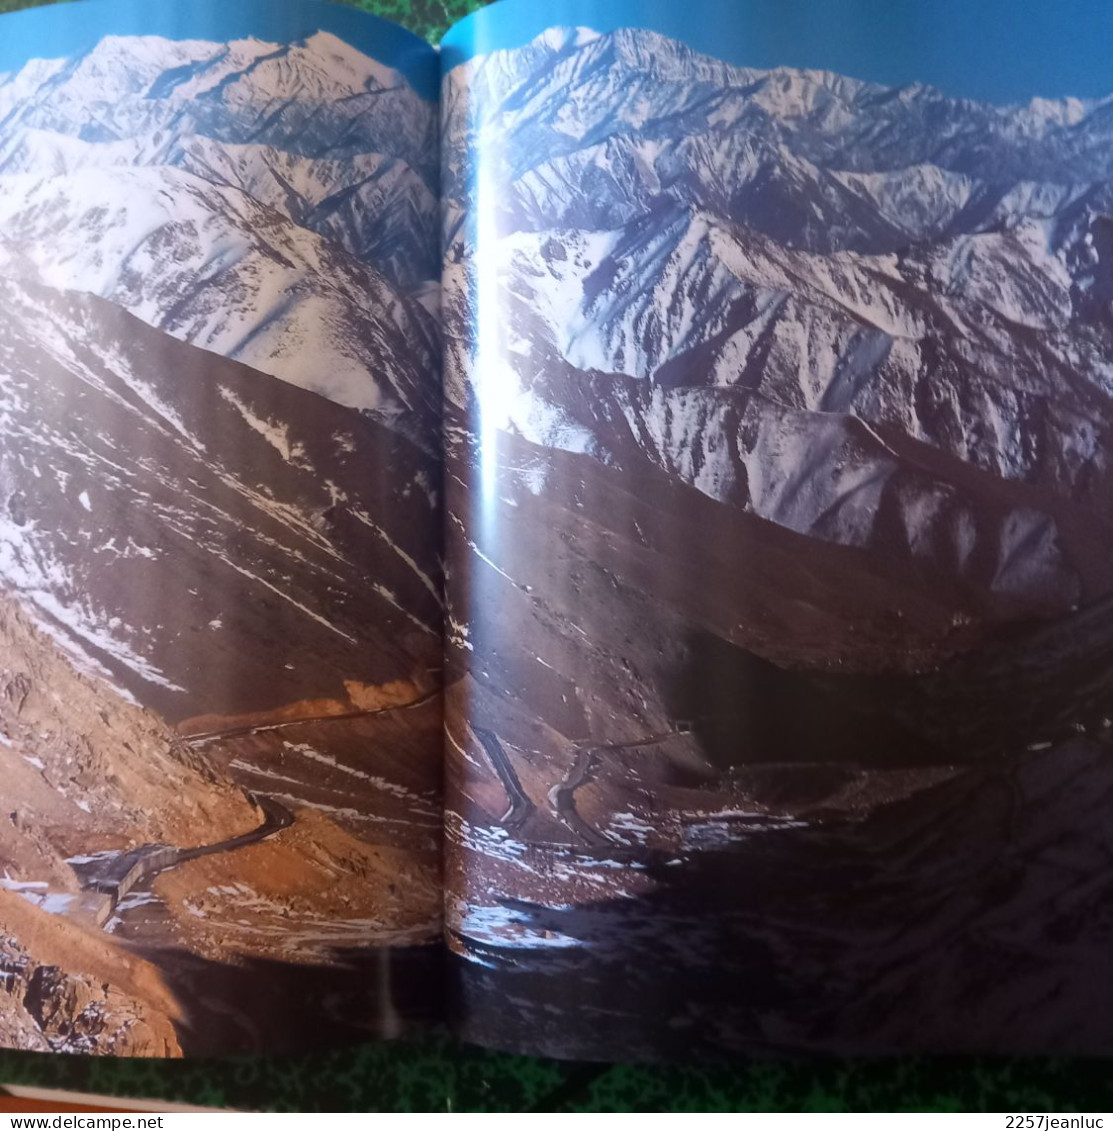 Montagnes du Monde Geo Editions Solar  2003 Beau livre de 207 pages avec reliure en  parfait état